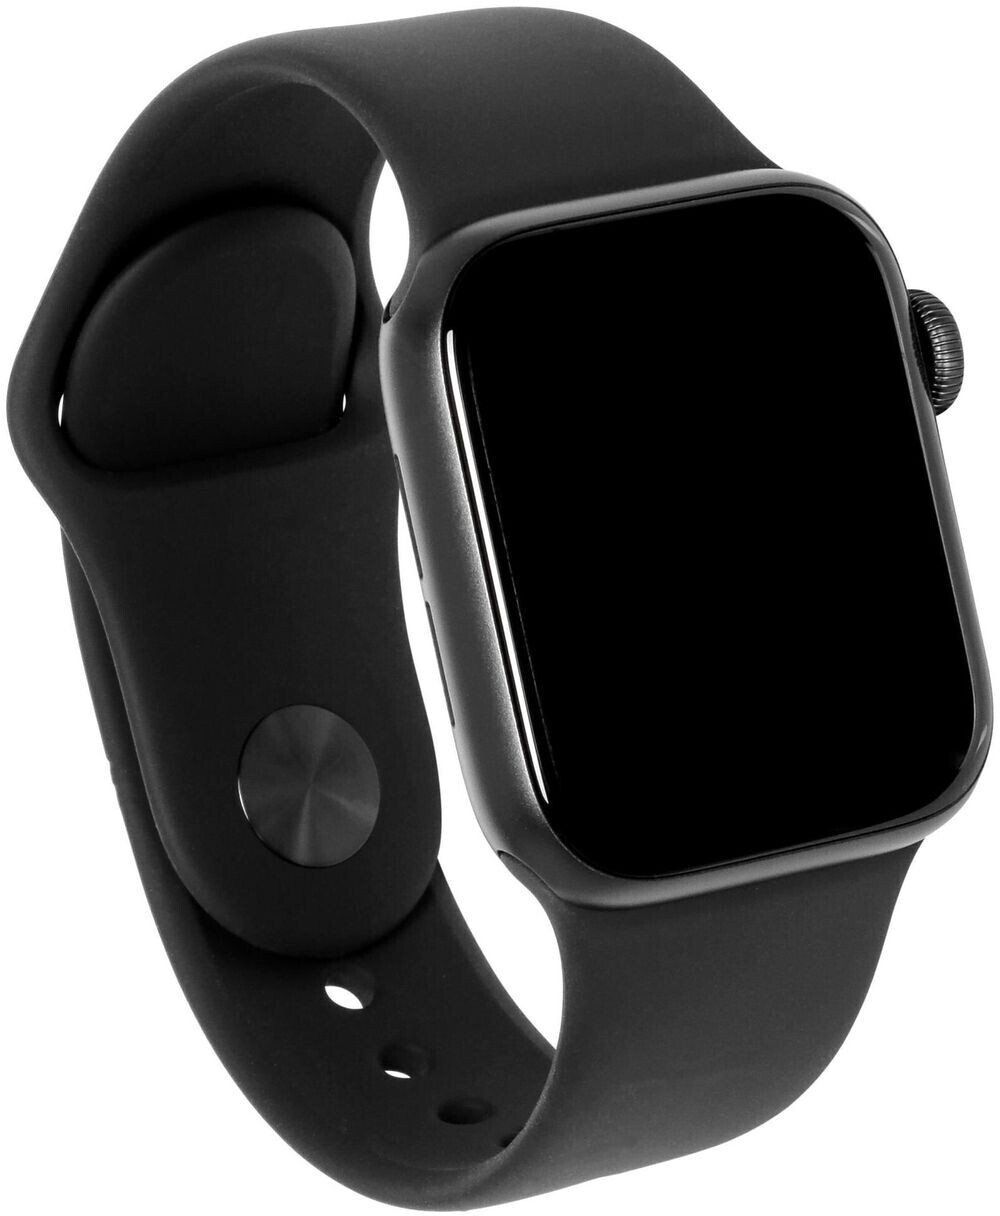 Apple watch series se 40. Apple watch se 44mm. Apple watch 5 Series 44 mm Space Gray. Apple watch se 44mm Space Grey. Apple watch se 40mm Gray.